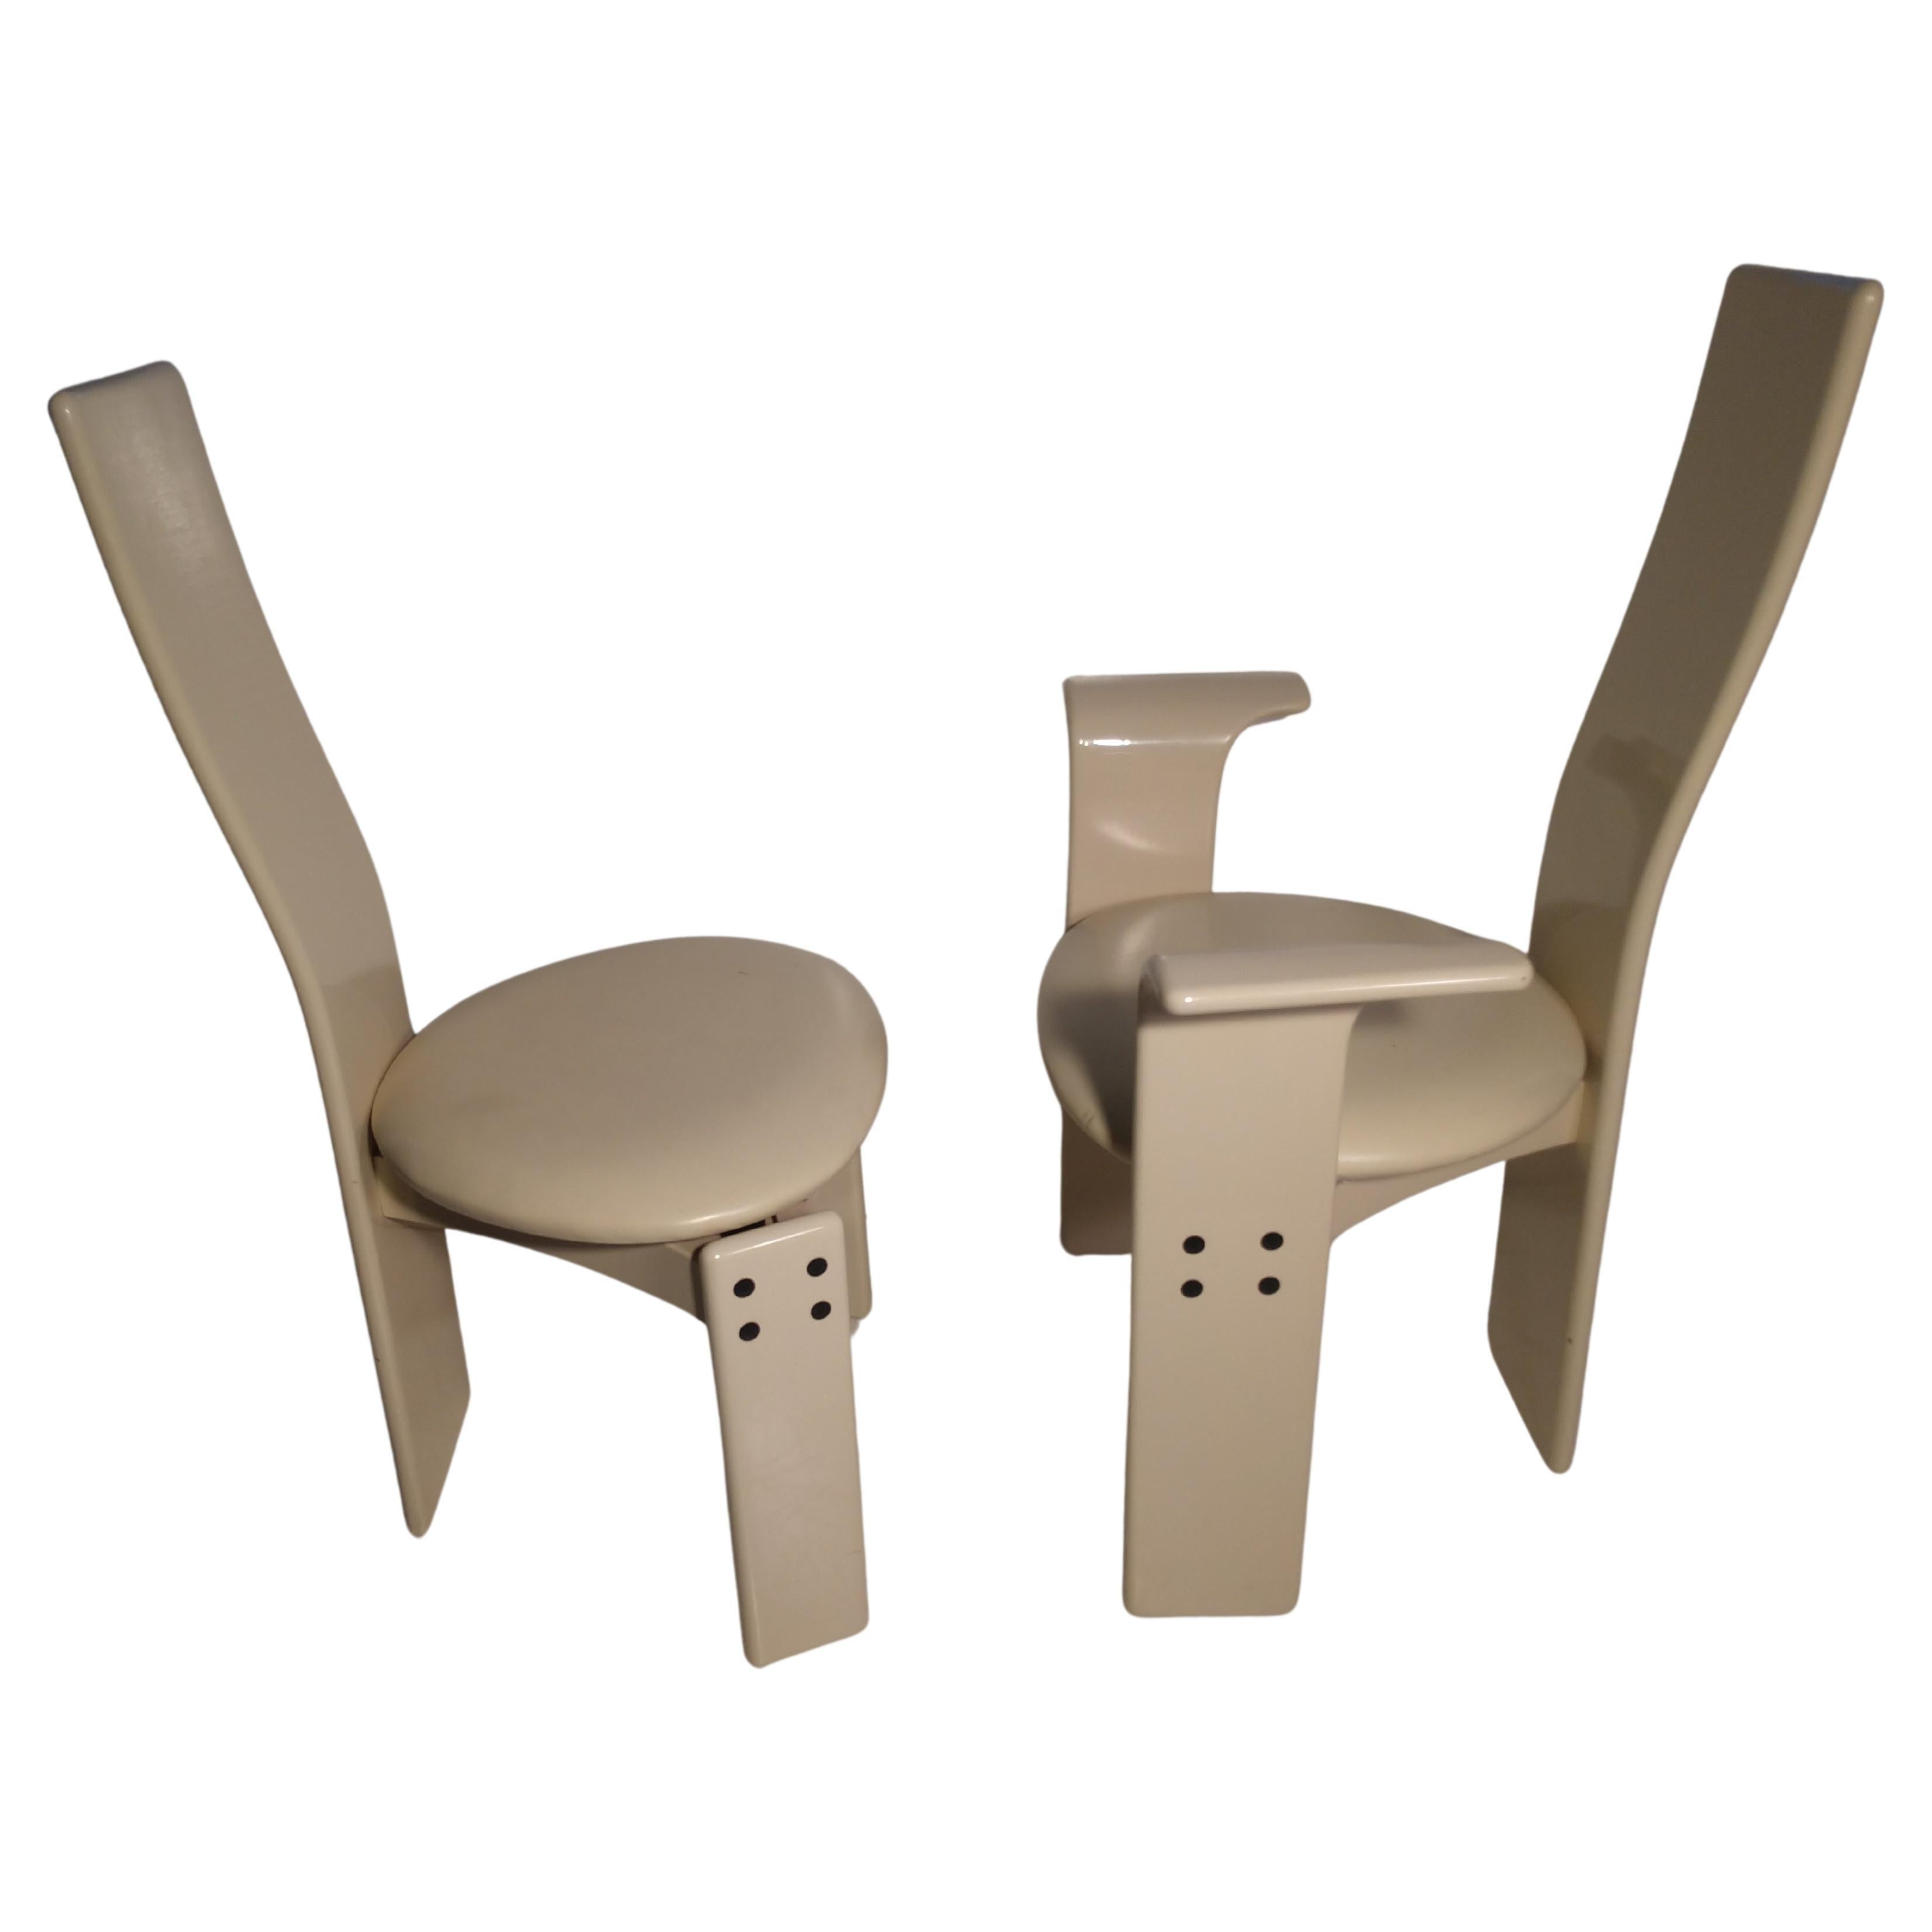 Satz von 4 postmodernen weiß lackierten Esszimmerstühlen. Hergestellt in Italien, im Stil von Saporiti. Der Lack weist nur minimale Mängel auf.
Im Bild. Größe: Die Sitzhöhe beträgt 18.